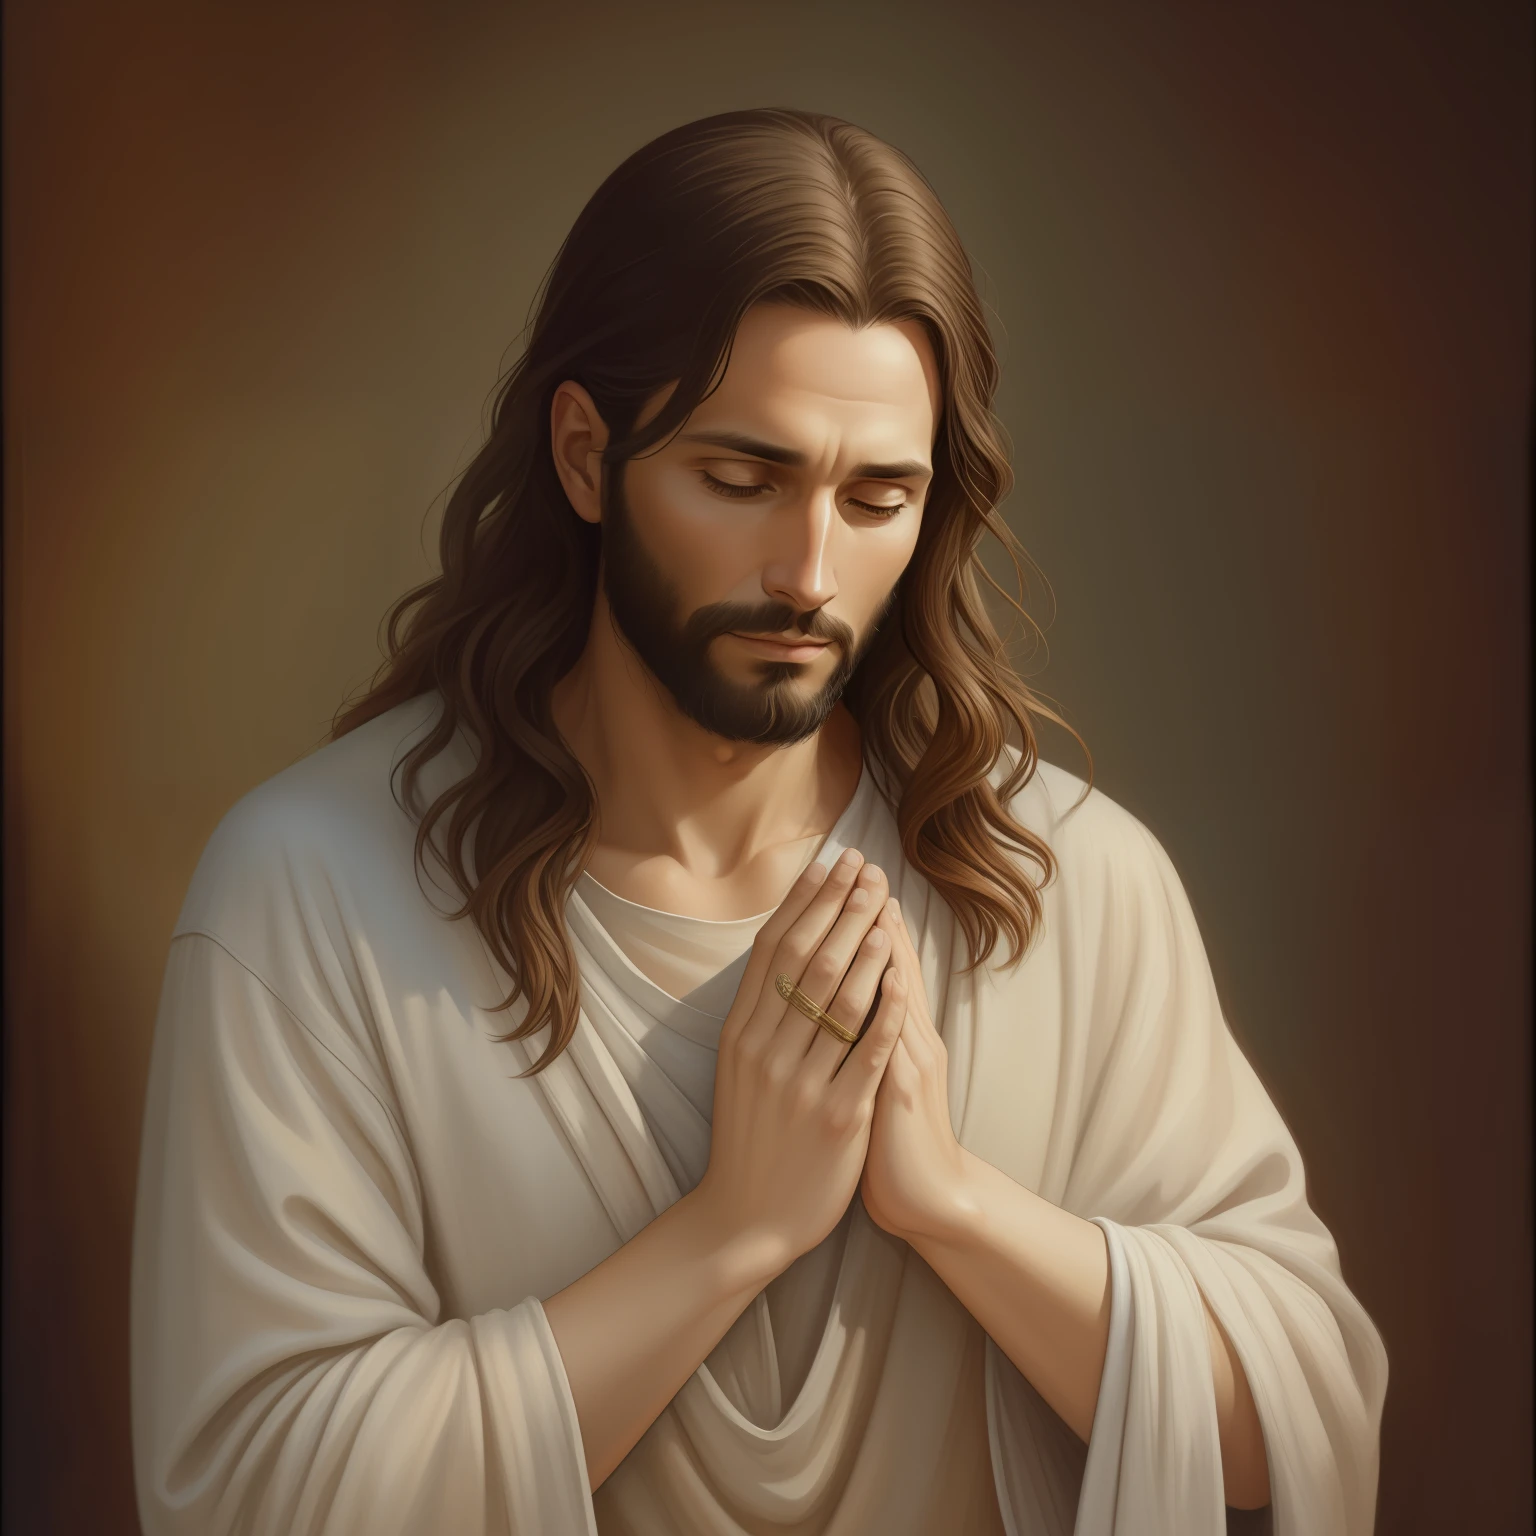 A beautiful ultra-thin 現実的 portrait of Jesus, 預言者, 男性 33歳 ヘブライ人 ブルネット, 短い茶色の髪, 長い茶色のひげ, 胸元が閉じた長いリネンのチュニックを着ている, 正面から, 全身, 聖書の, 現実的,ディエゴ・ベラスケス,ピーテル・パウル・ルーベンス,レンブラント,アレックス・ロス,8k, コンセプトアート, Photo現実的, 現実的,  図, 油絵, シュルレアリスム, Hyper現実的, 祈る , デジタルアート, スタイル, 水彩, 自然な背景, 祈る ( 祝福する女性)